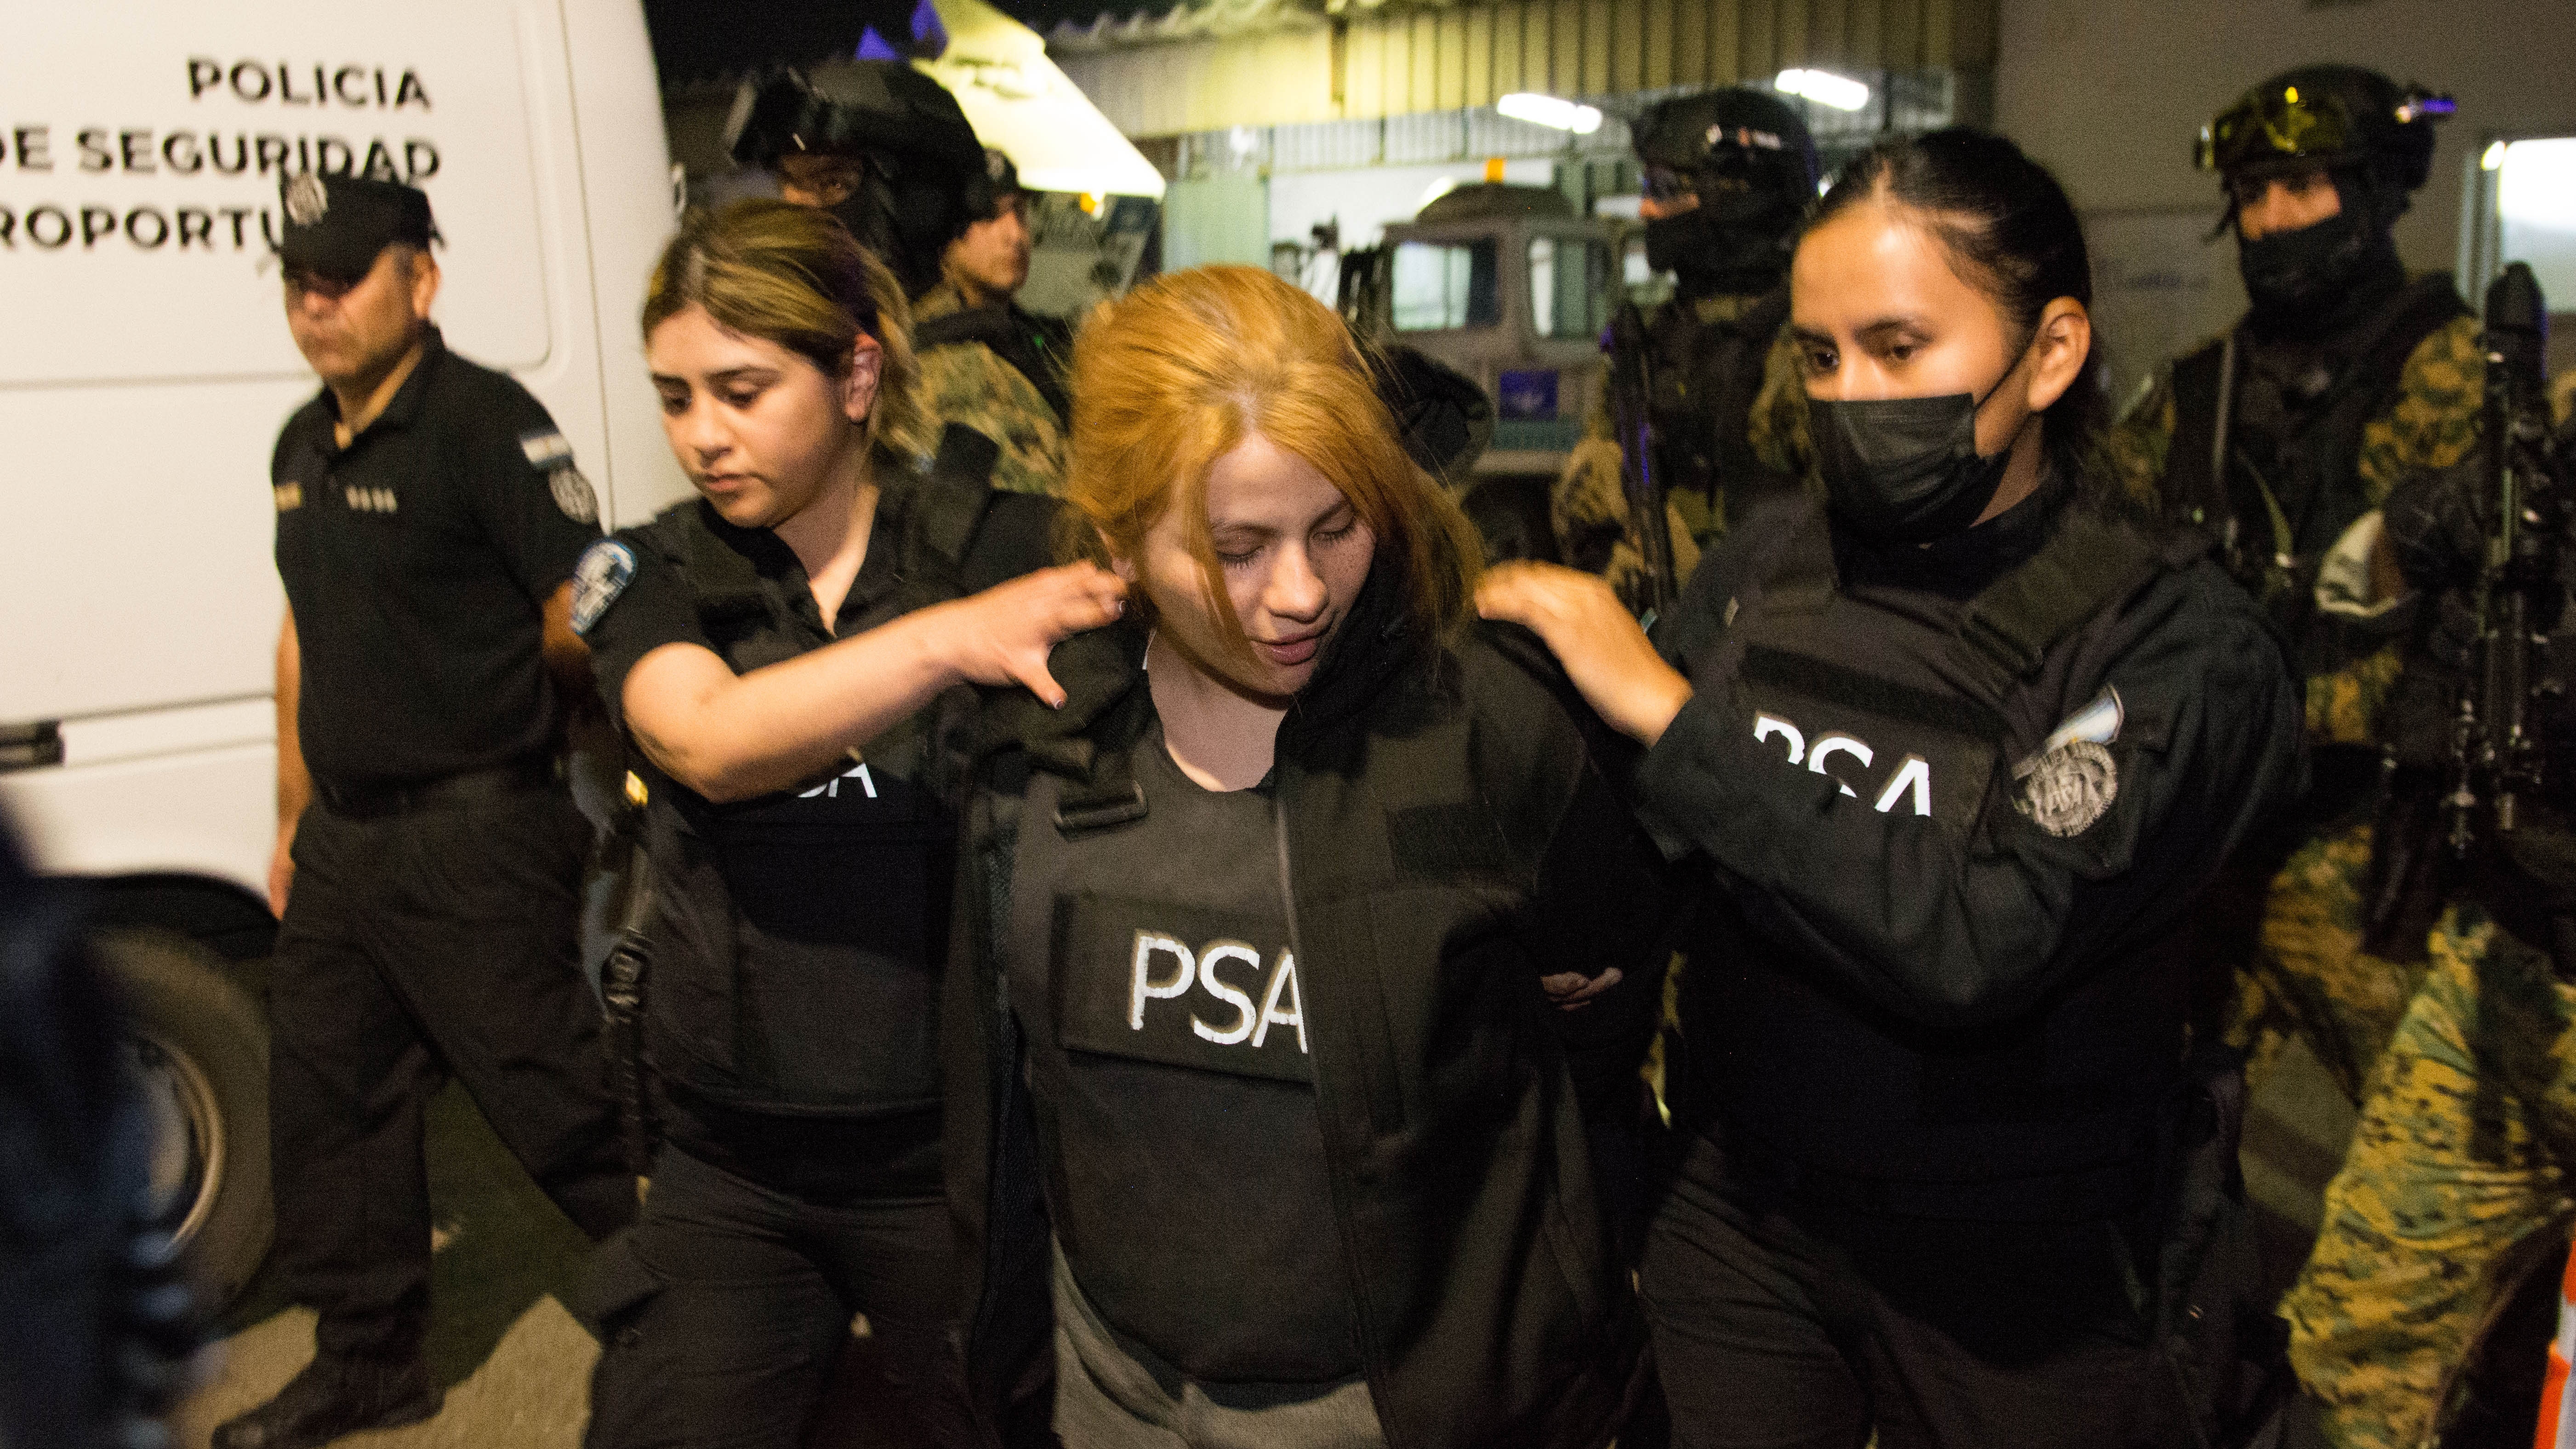 La Justicia encontró pruebas de que hubo un plan y mas intentos para atacar a Cristina Kirchner en el celular de Brenda Uliarte